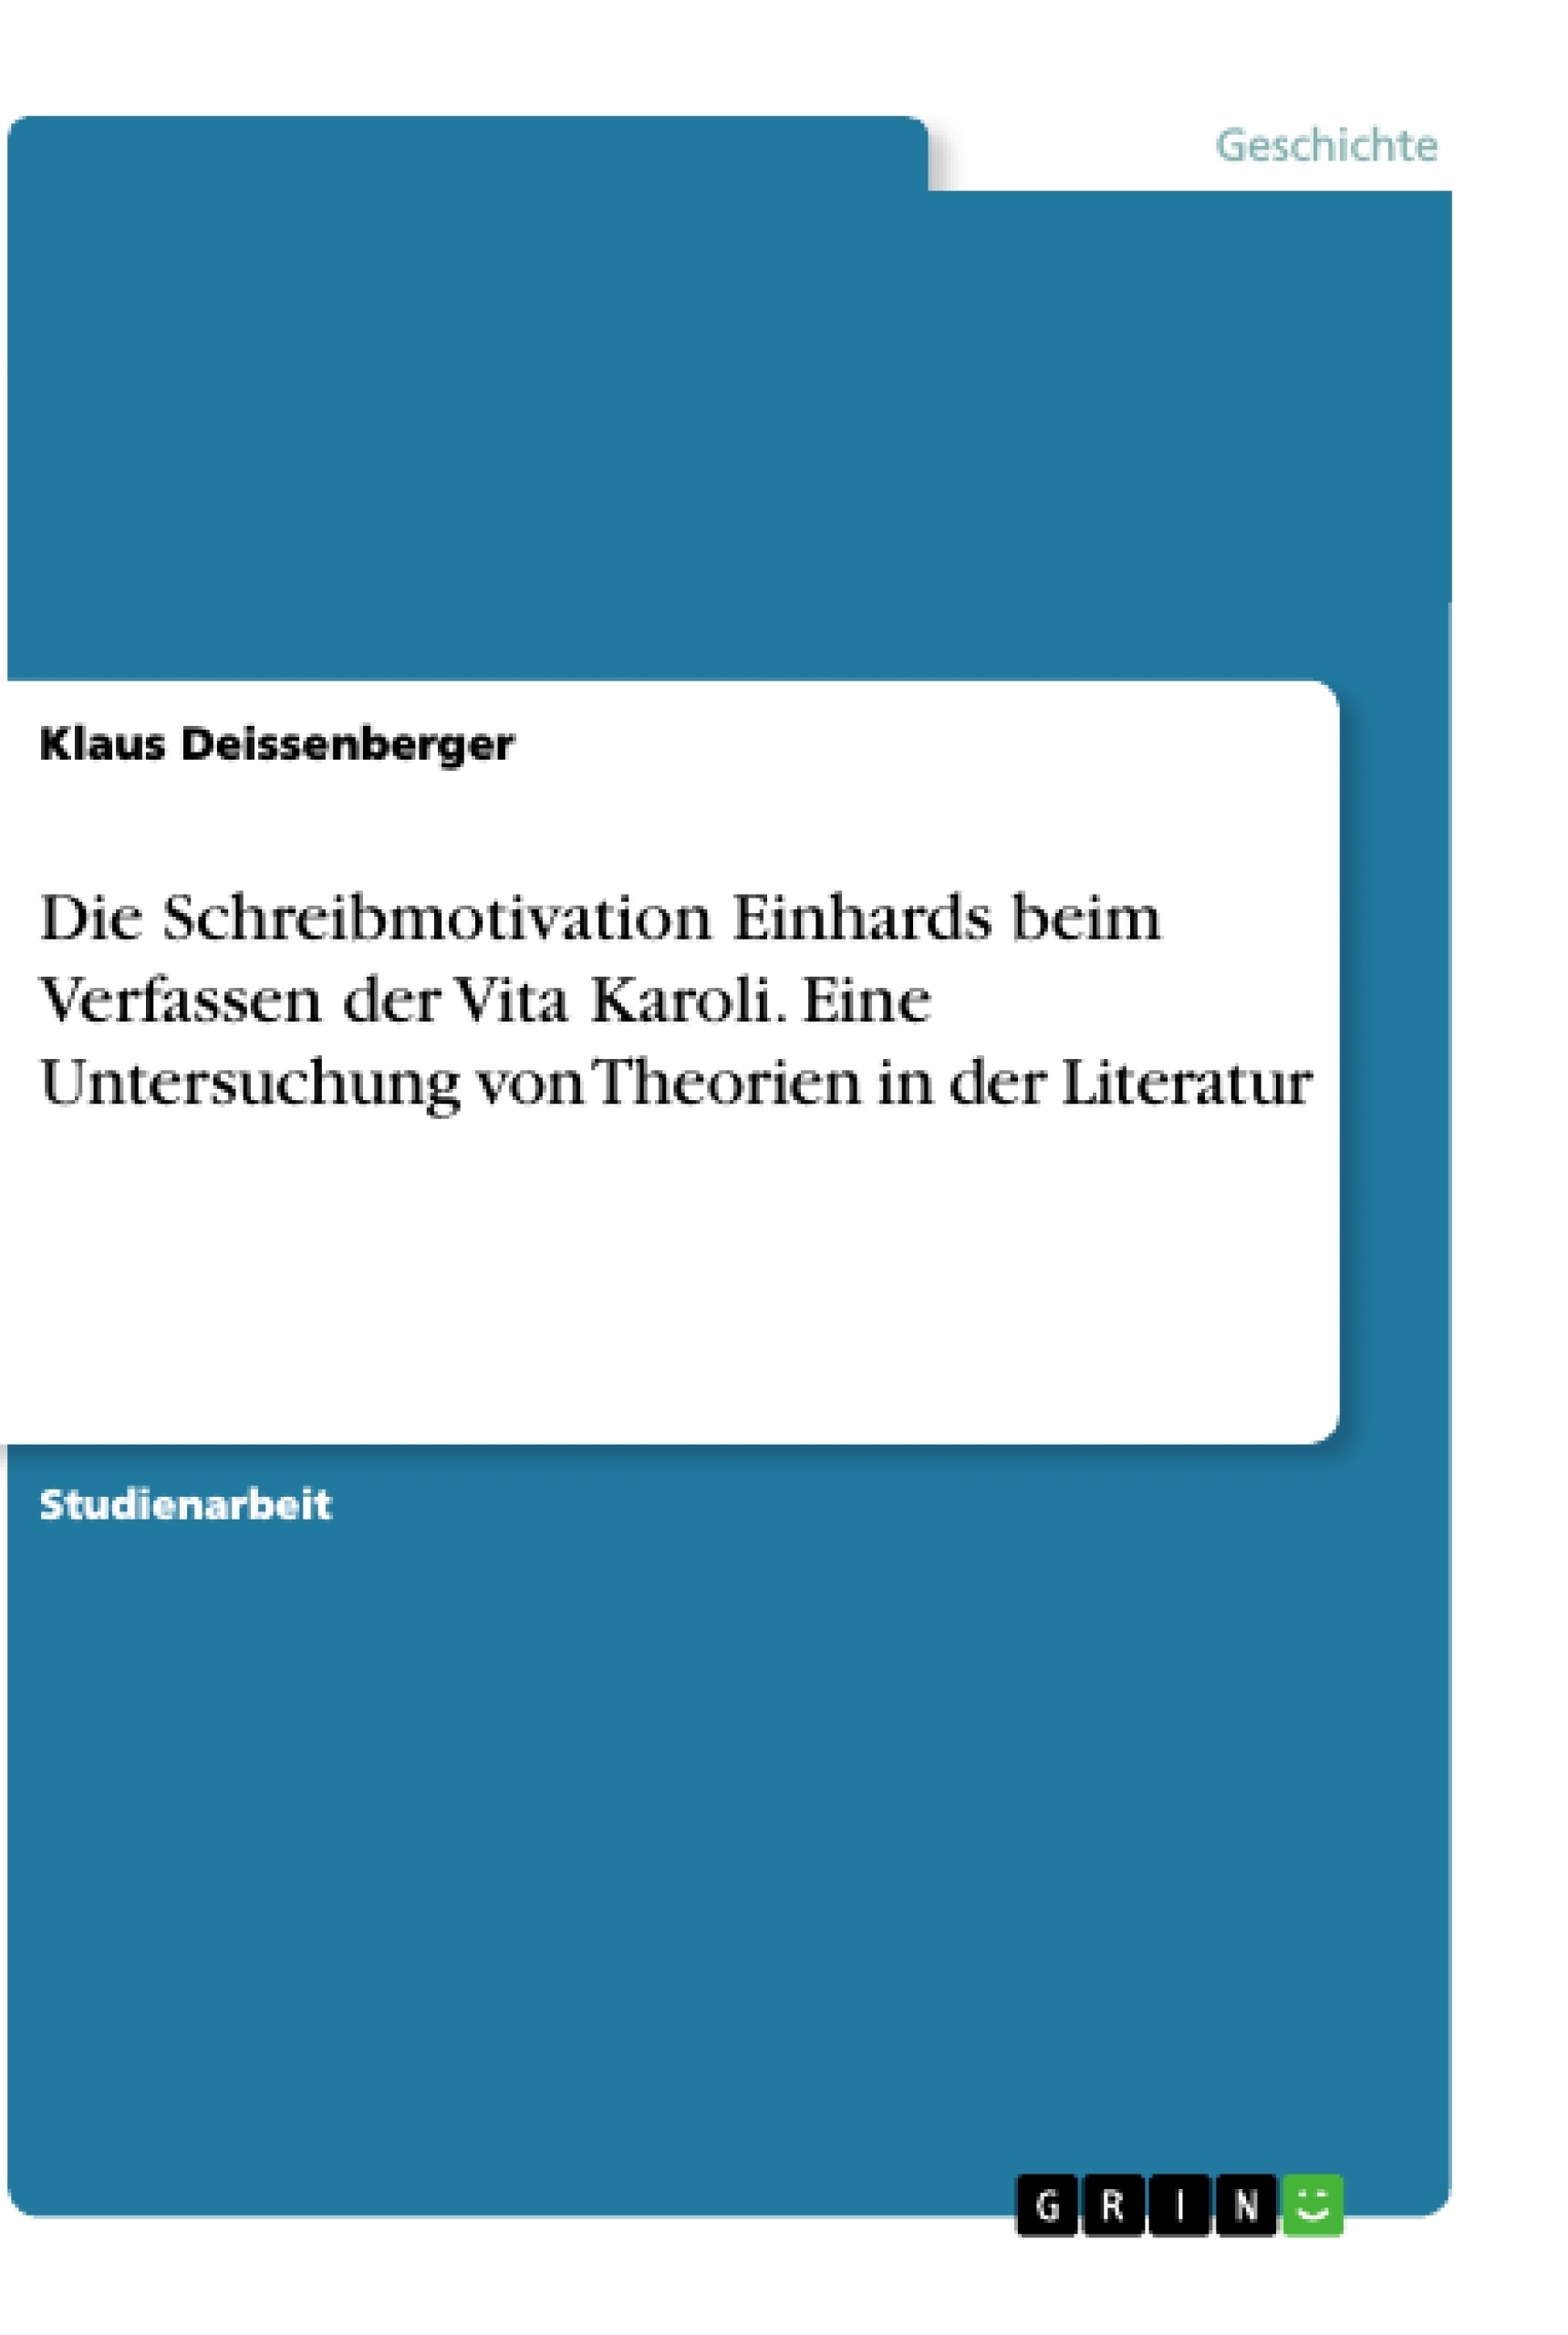 Title: Die Schreibmotivation Einhards beim Verfassen der Vita Karoli. Eine Untersuchung von Theorien in der Literatur